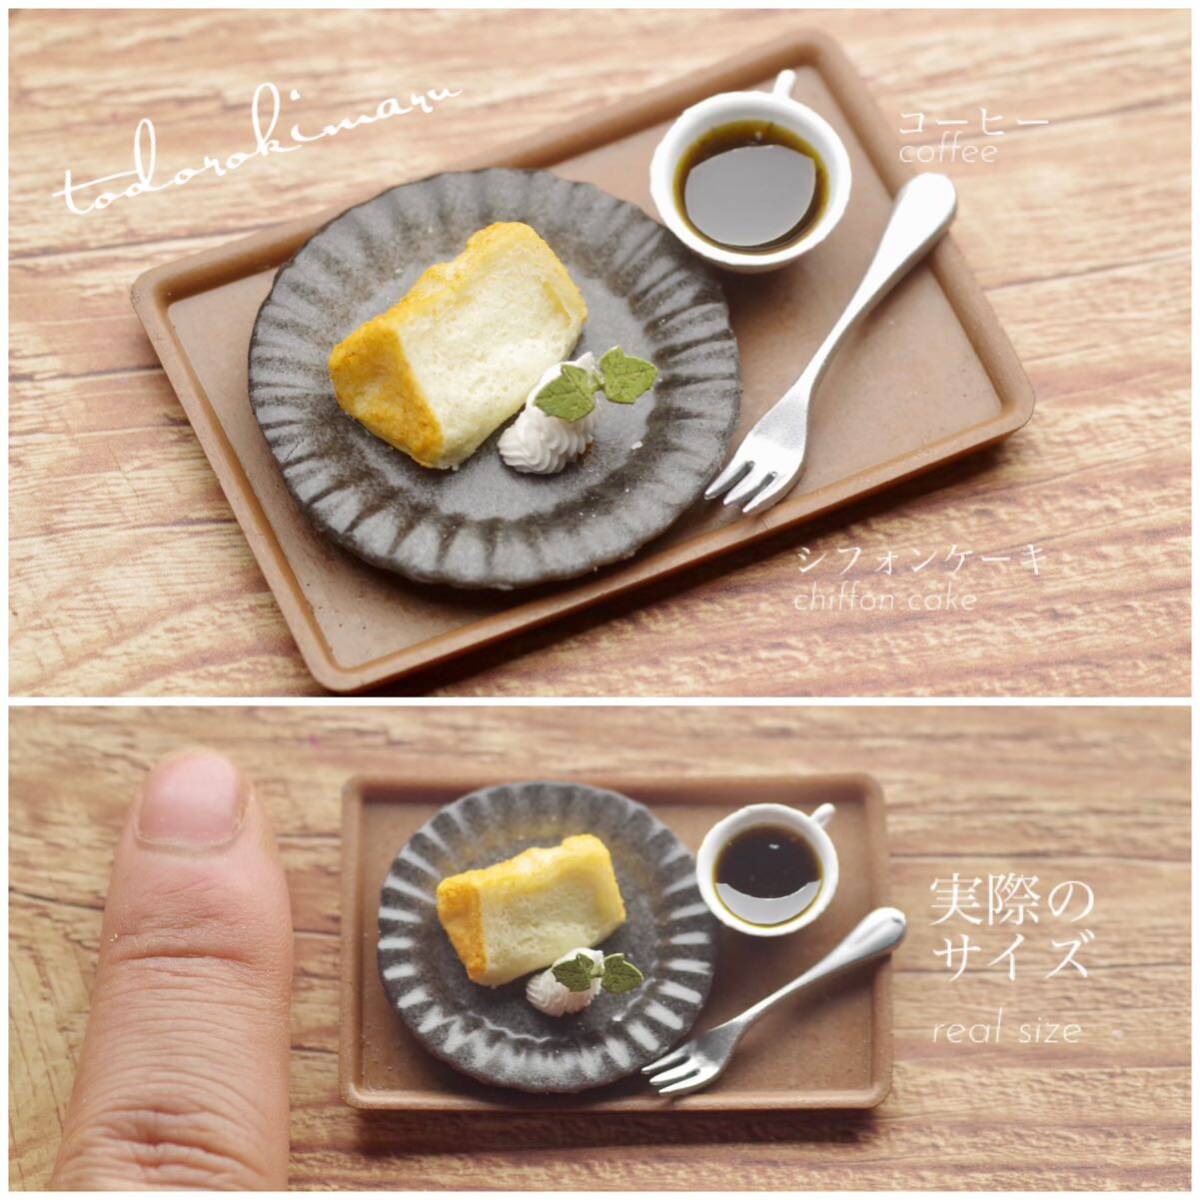 【ミニチュアフード】シフォンケーキ★食品サンプル ドールハウス★の画像1